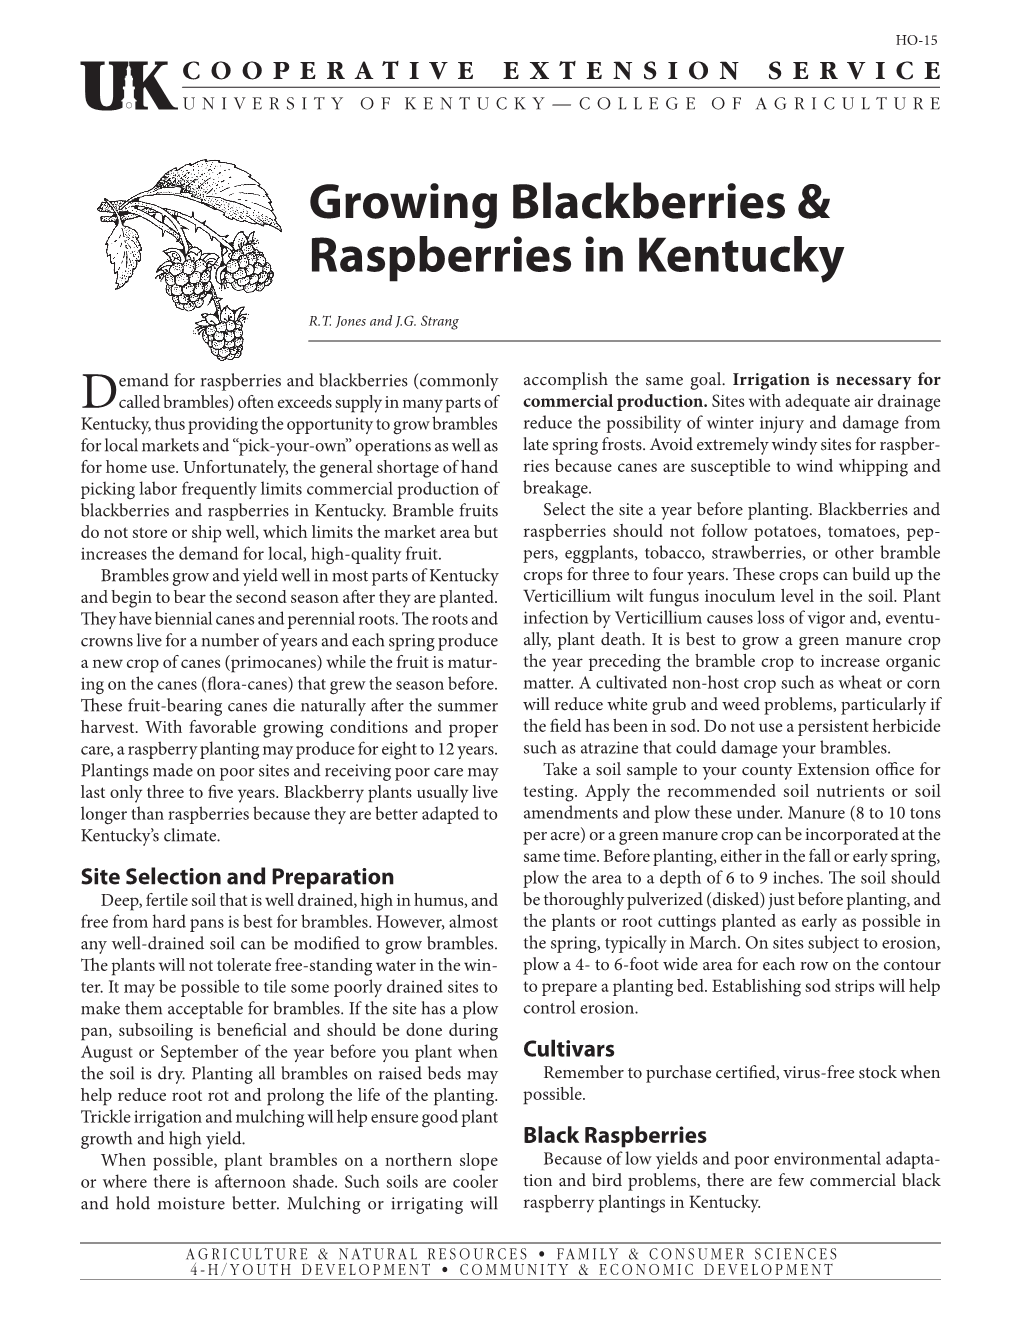 HO-15: Growing Blackberries & Raspberries in Kentucky